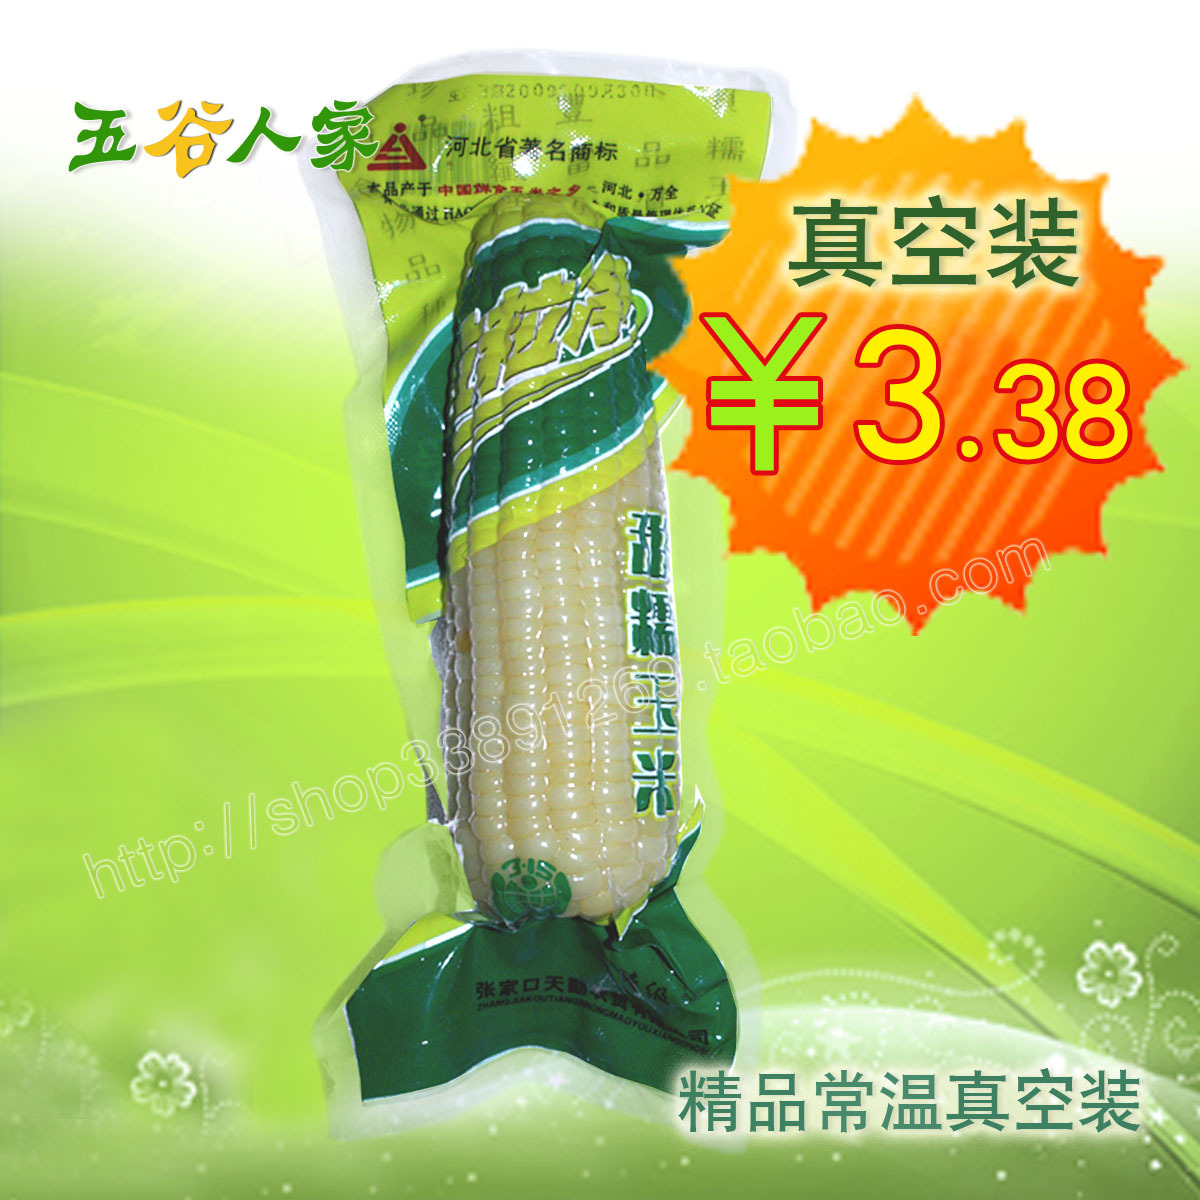 糯玉米棒/甜玉米棒/精品常温真空包装 有机食品 促销价3.38